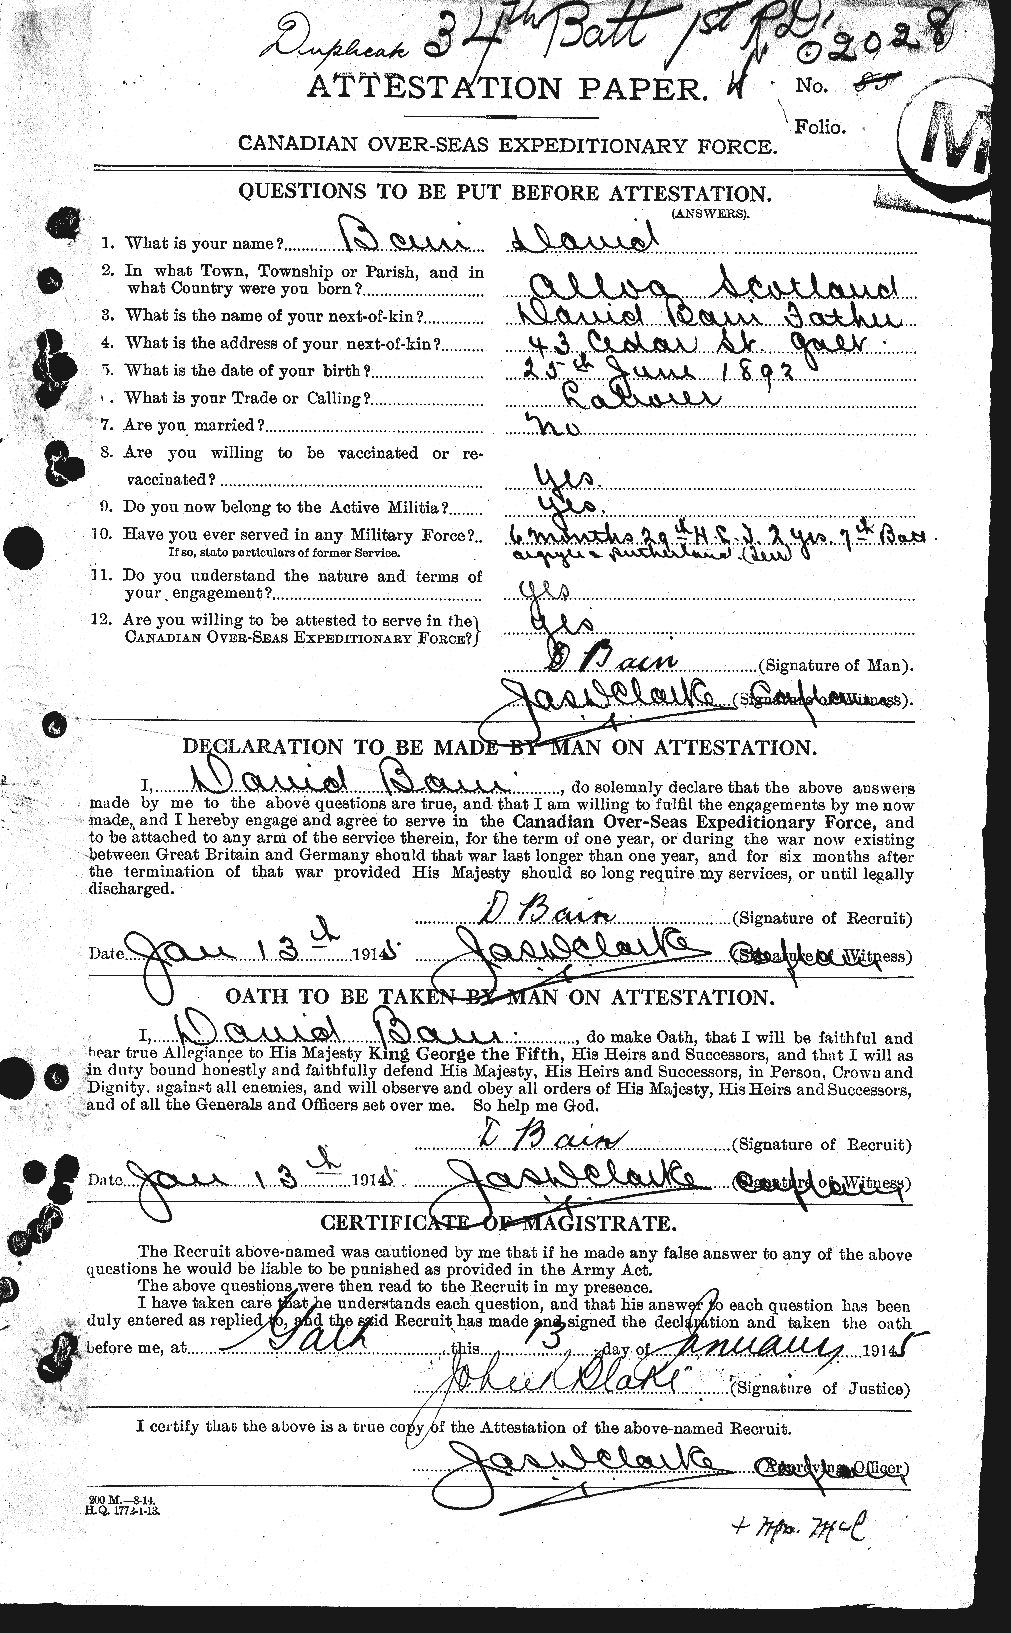 Dossiers du Personnel de la Première Guerre mondiale - CEC 226154a